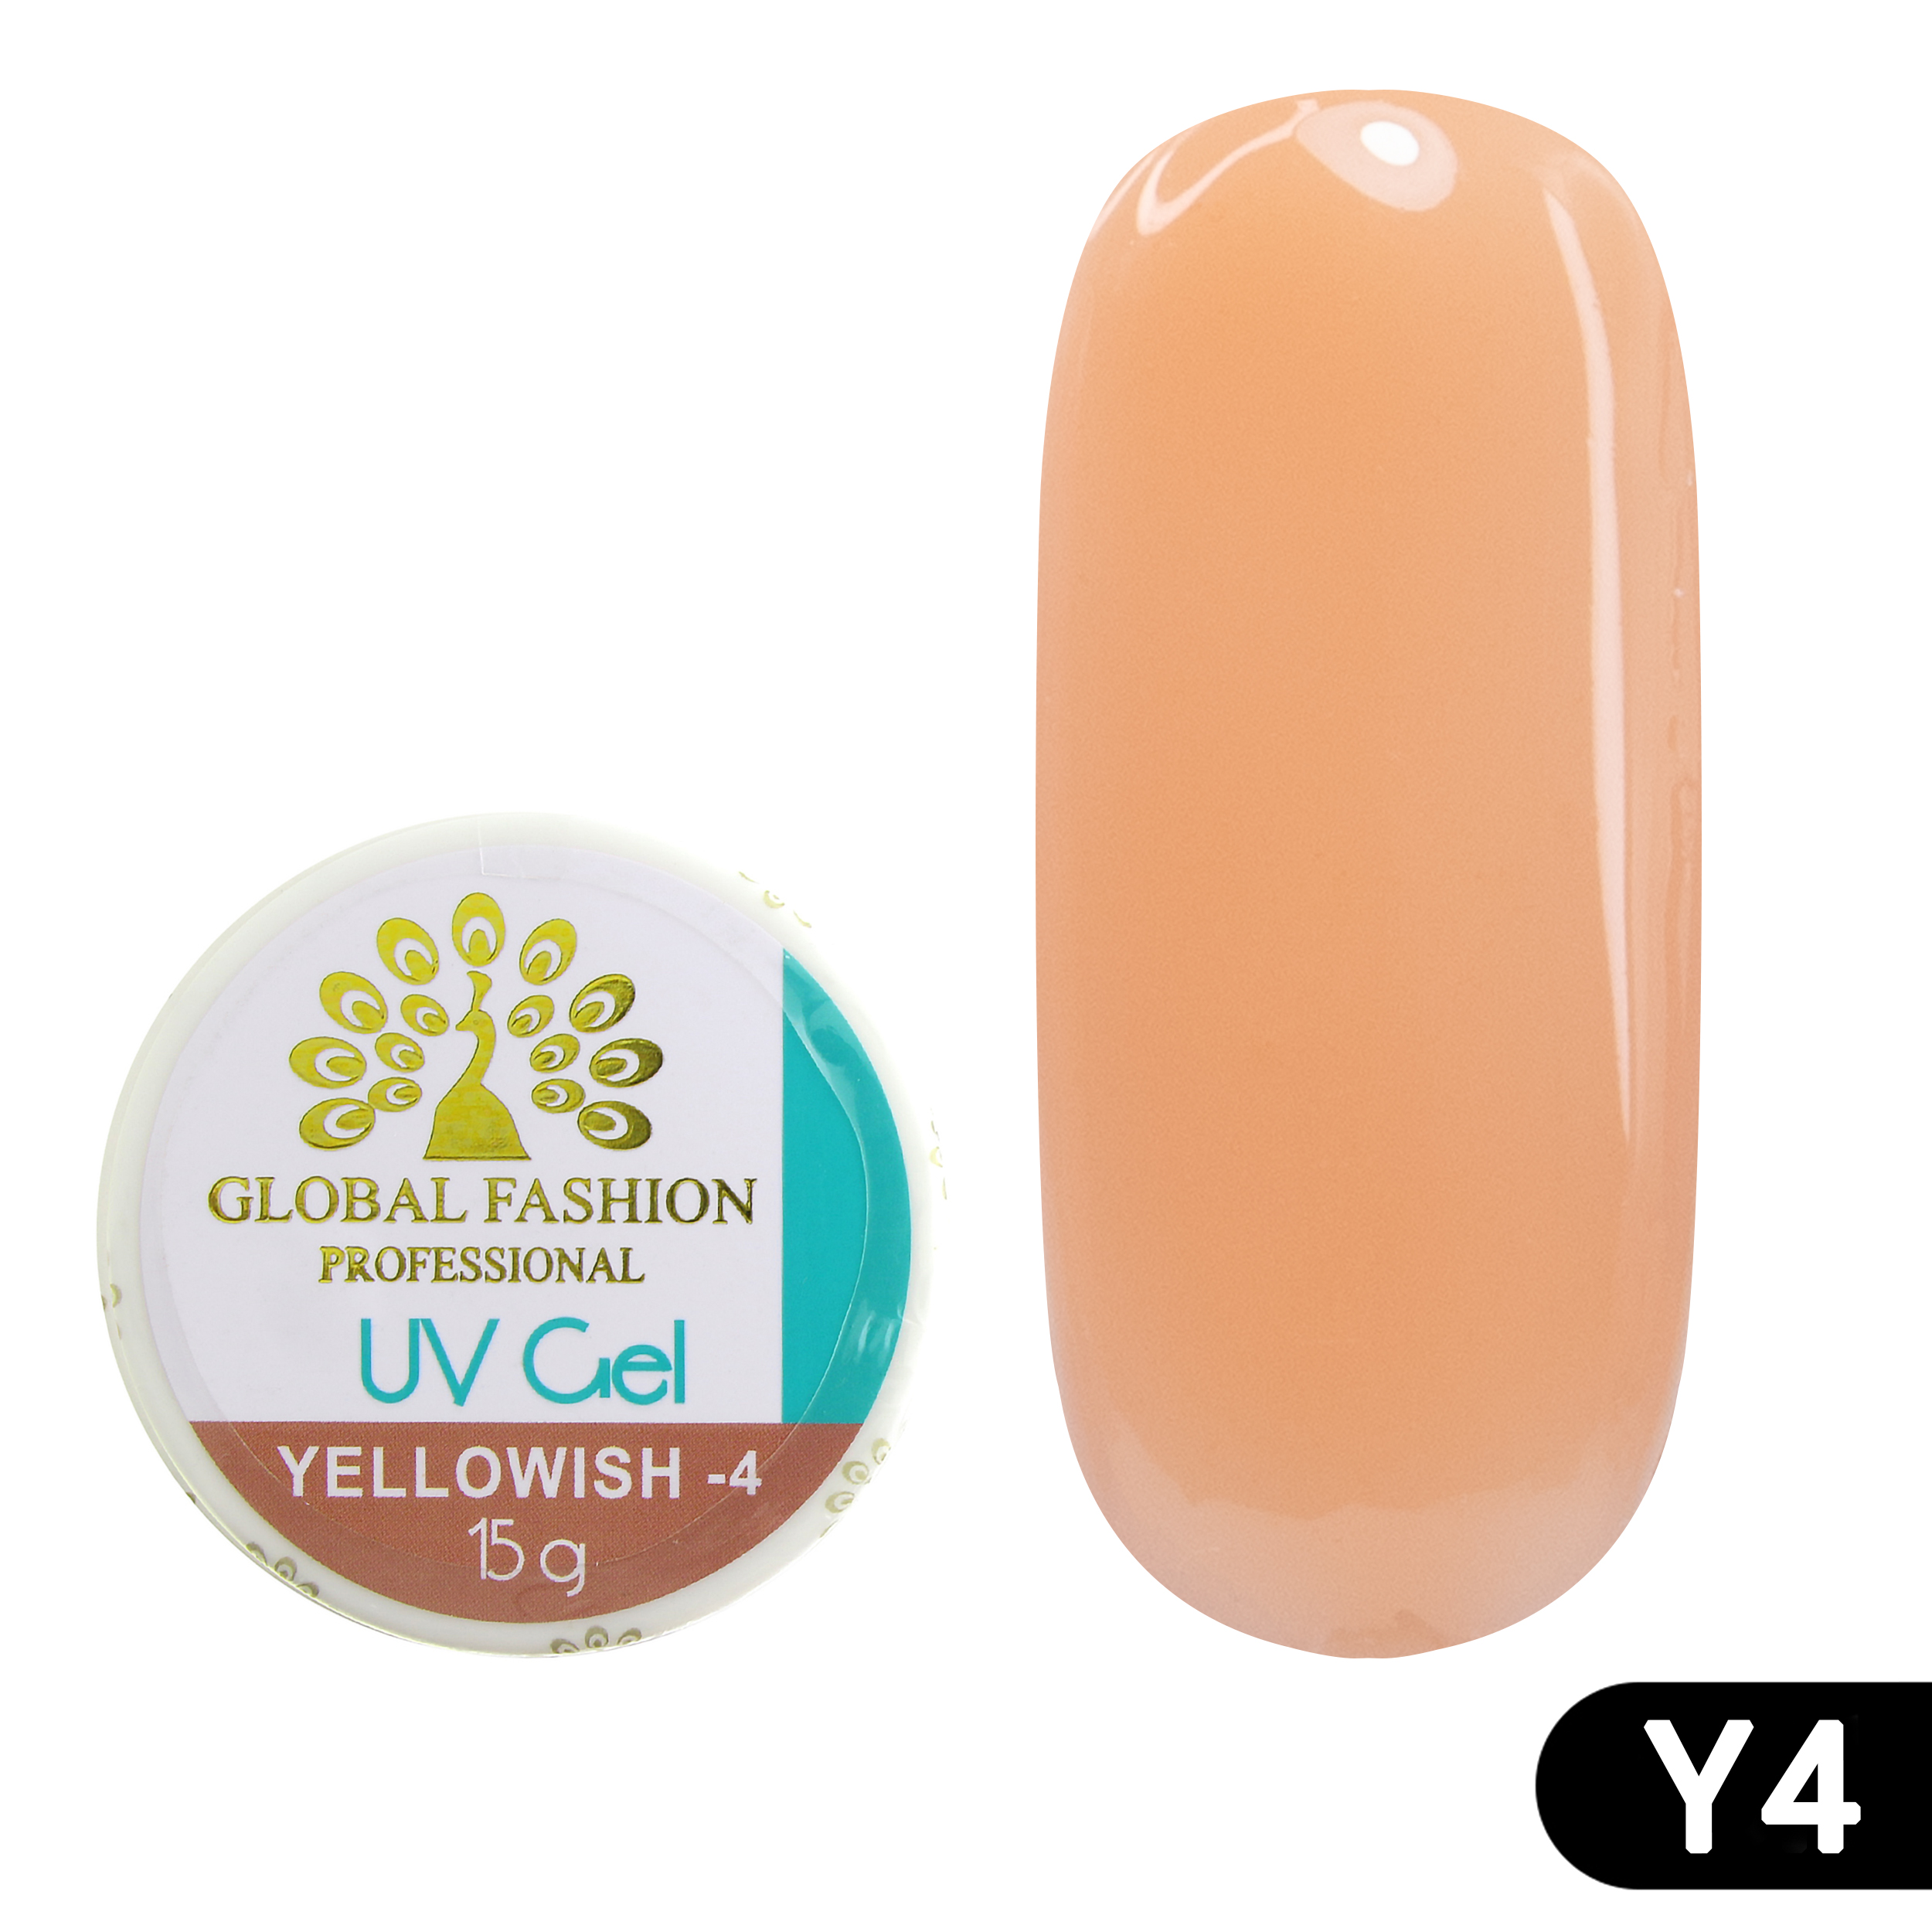 Гель для наращивания ногтей камуфляж-4 Global Fashion Yellowish-4 15 г акригель для наращивания ногтей diva nail technology полигель в тюбике прозрачный 30 г